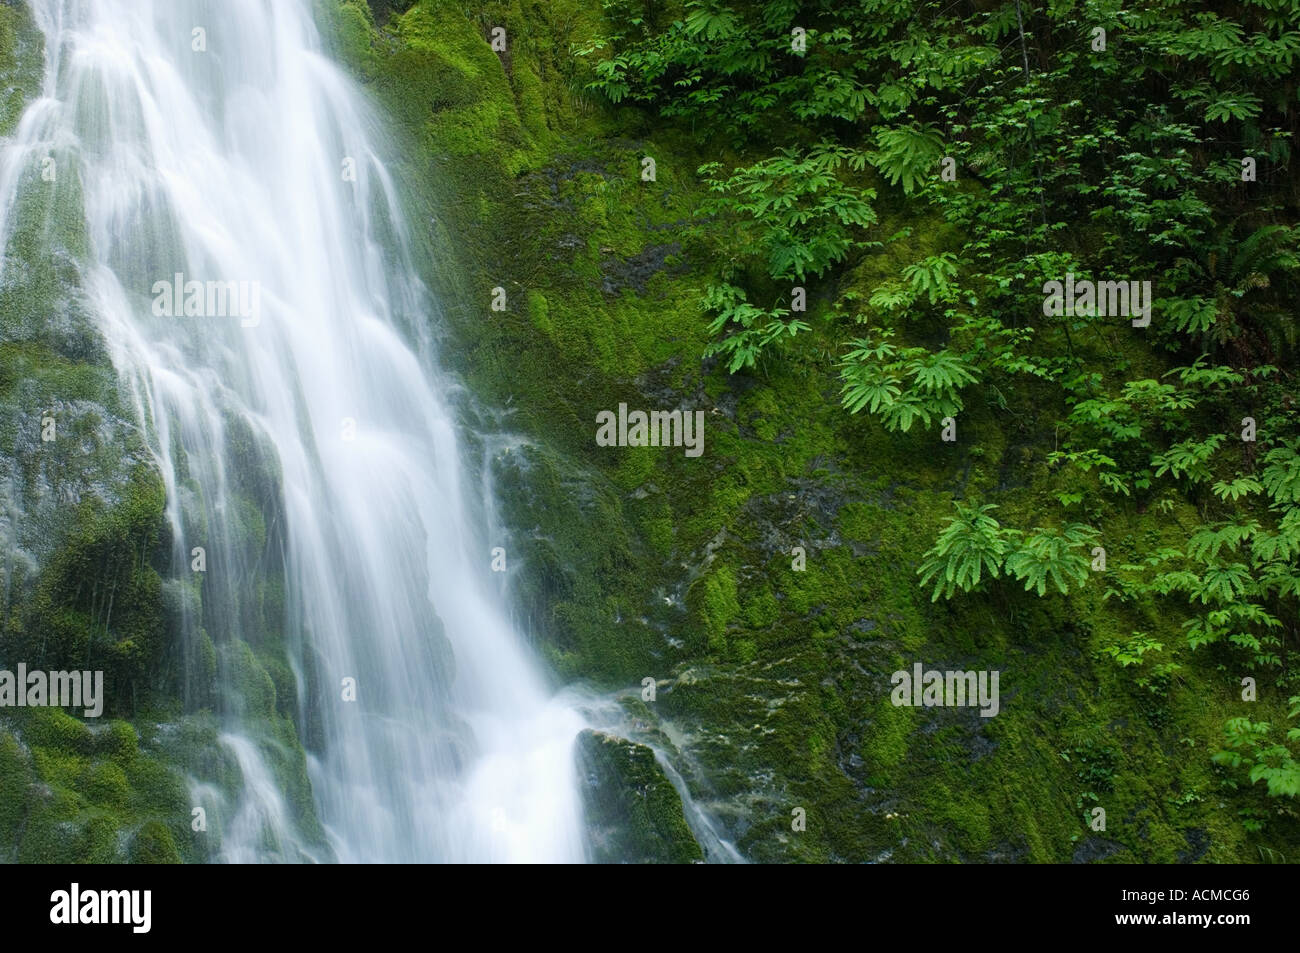 Stati Uniti d'America, Washington, il Parco Nazionale di Olympic, Elwha River Valley, una piccola cascata in primavera Foto Stock